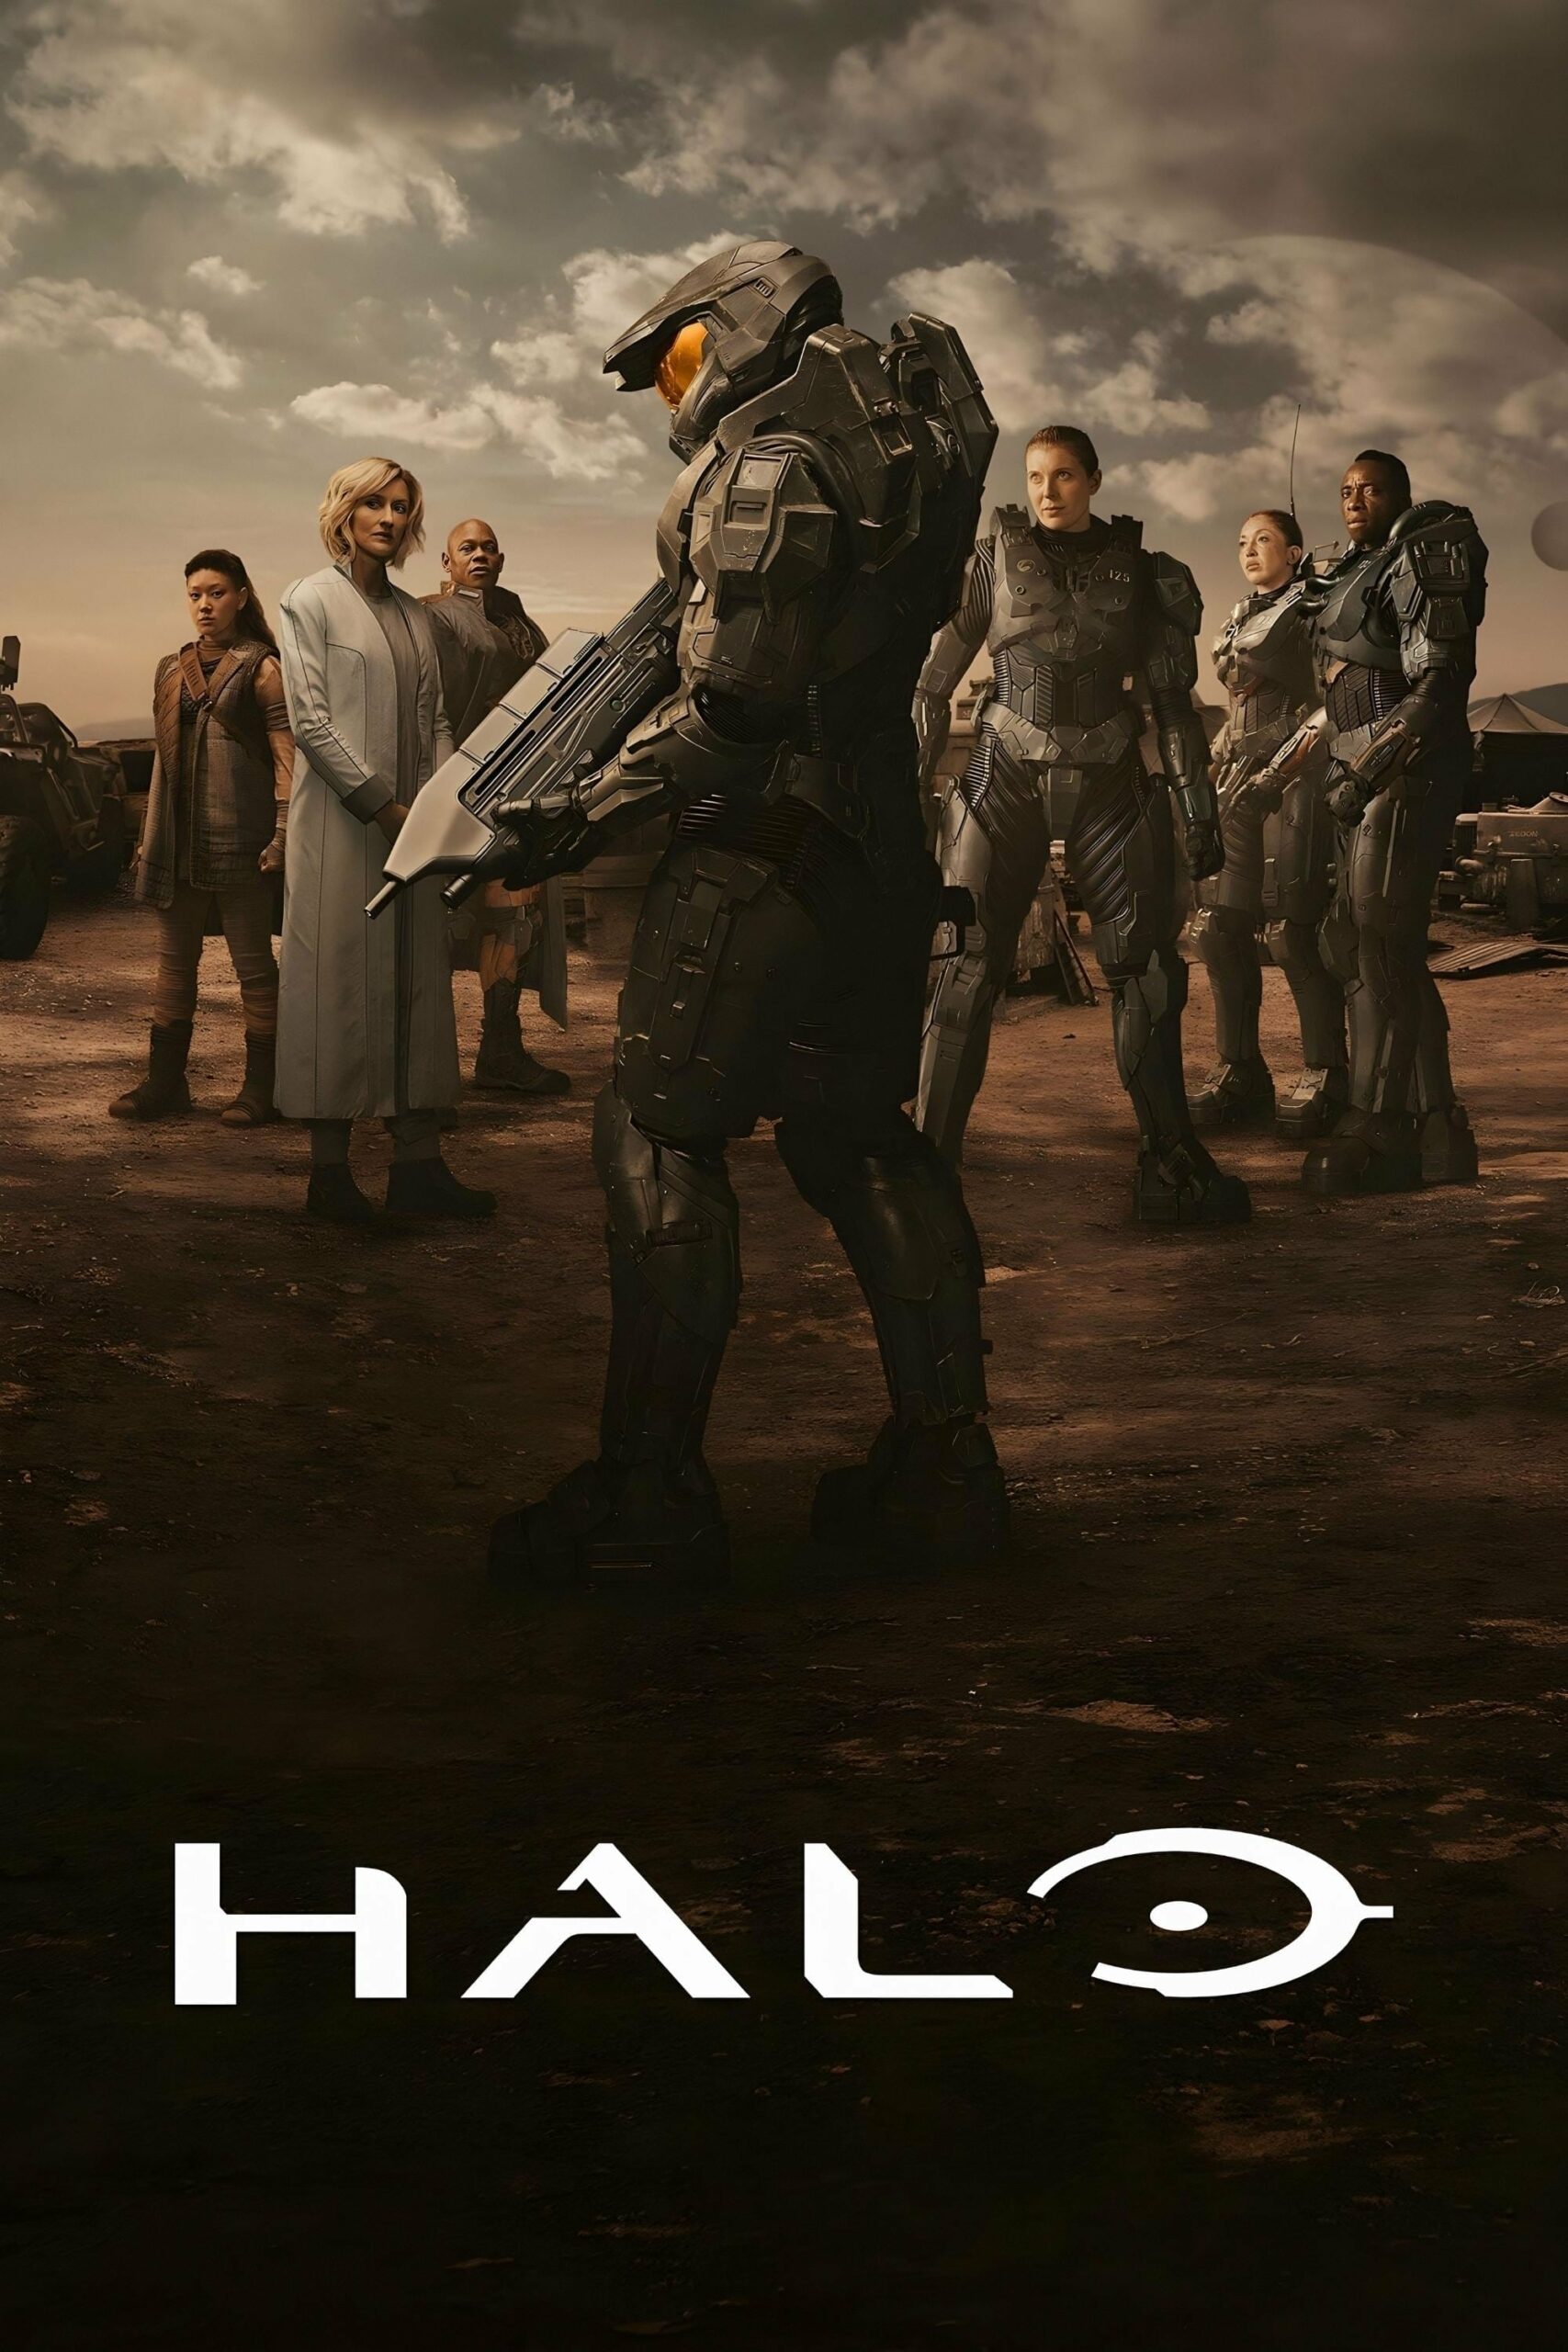 Plakát pro film “Halo”